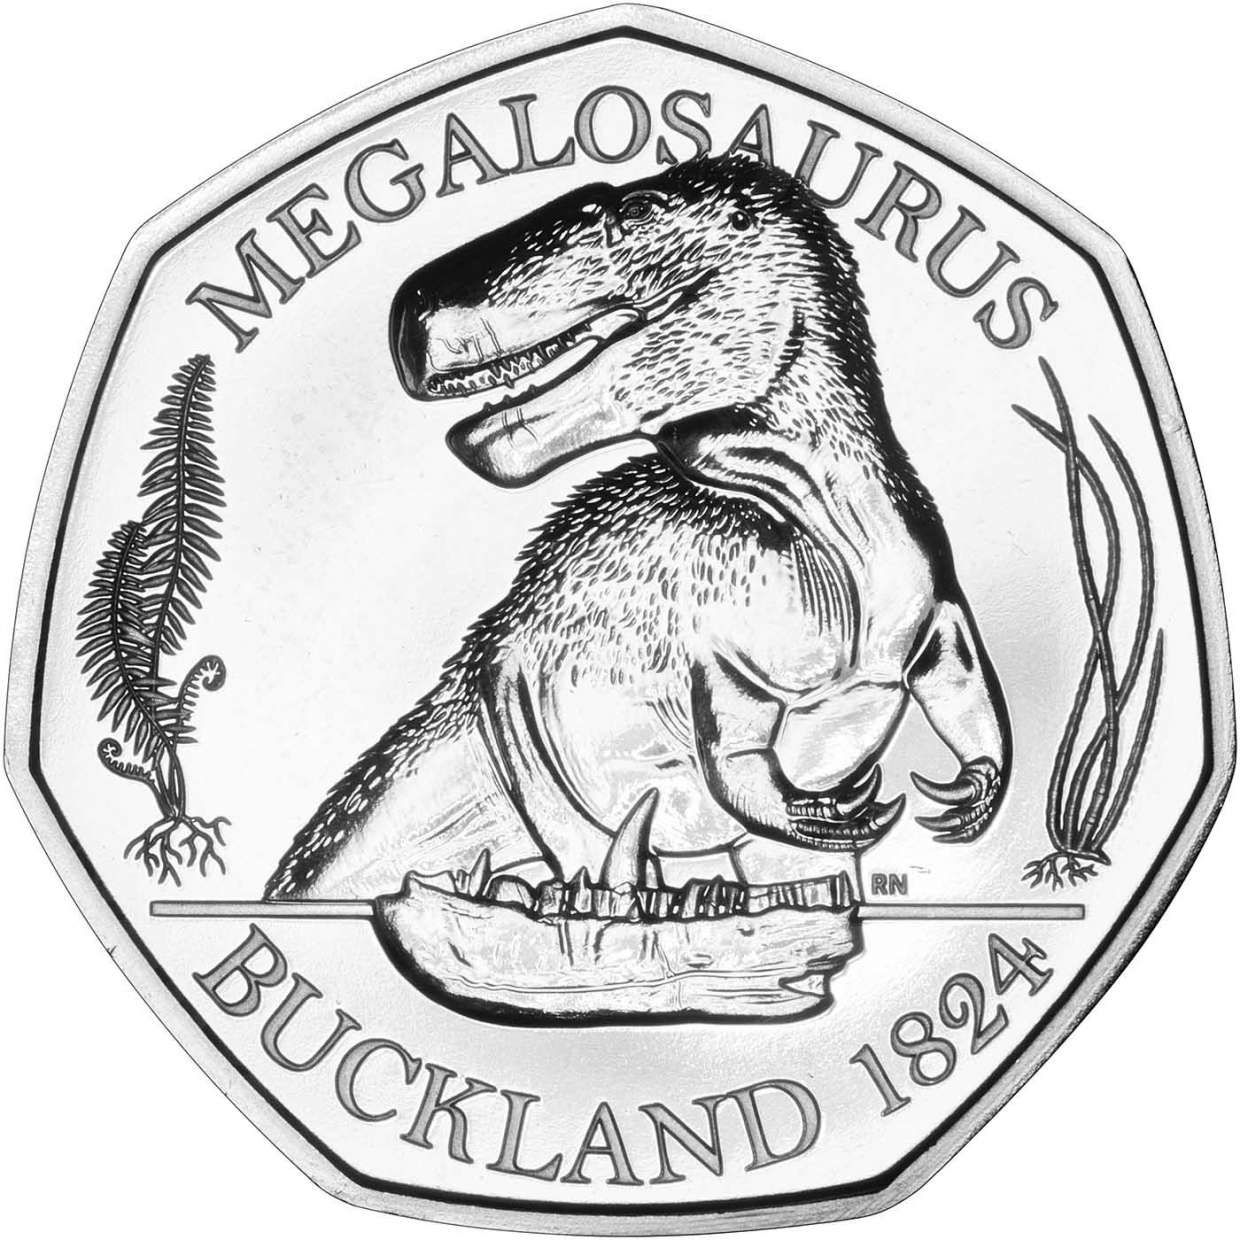 2020 Megalosaurus B.U. 50 Pence Coin